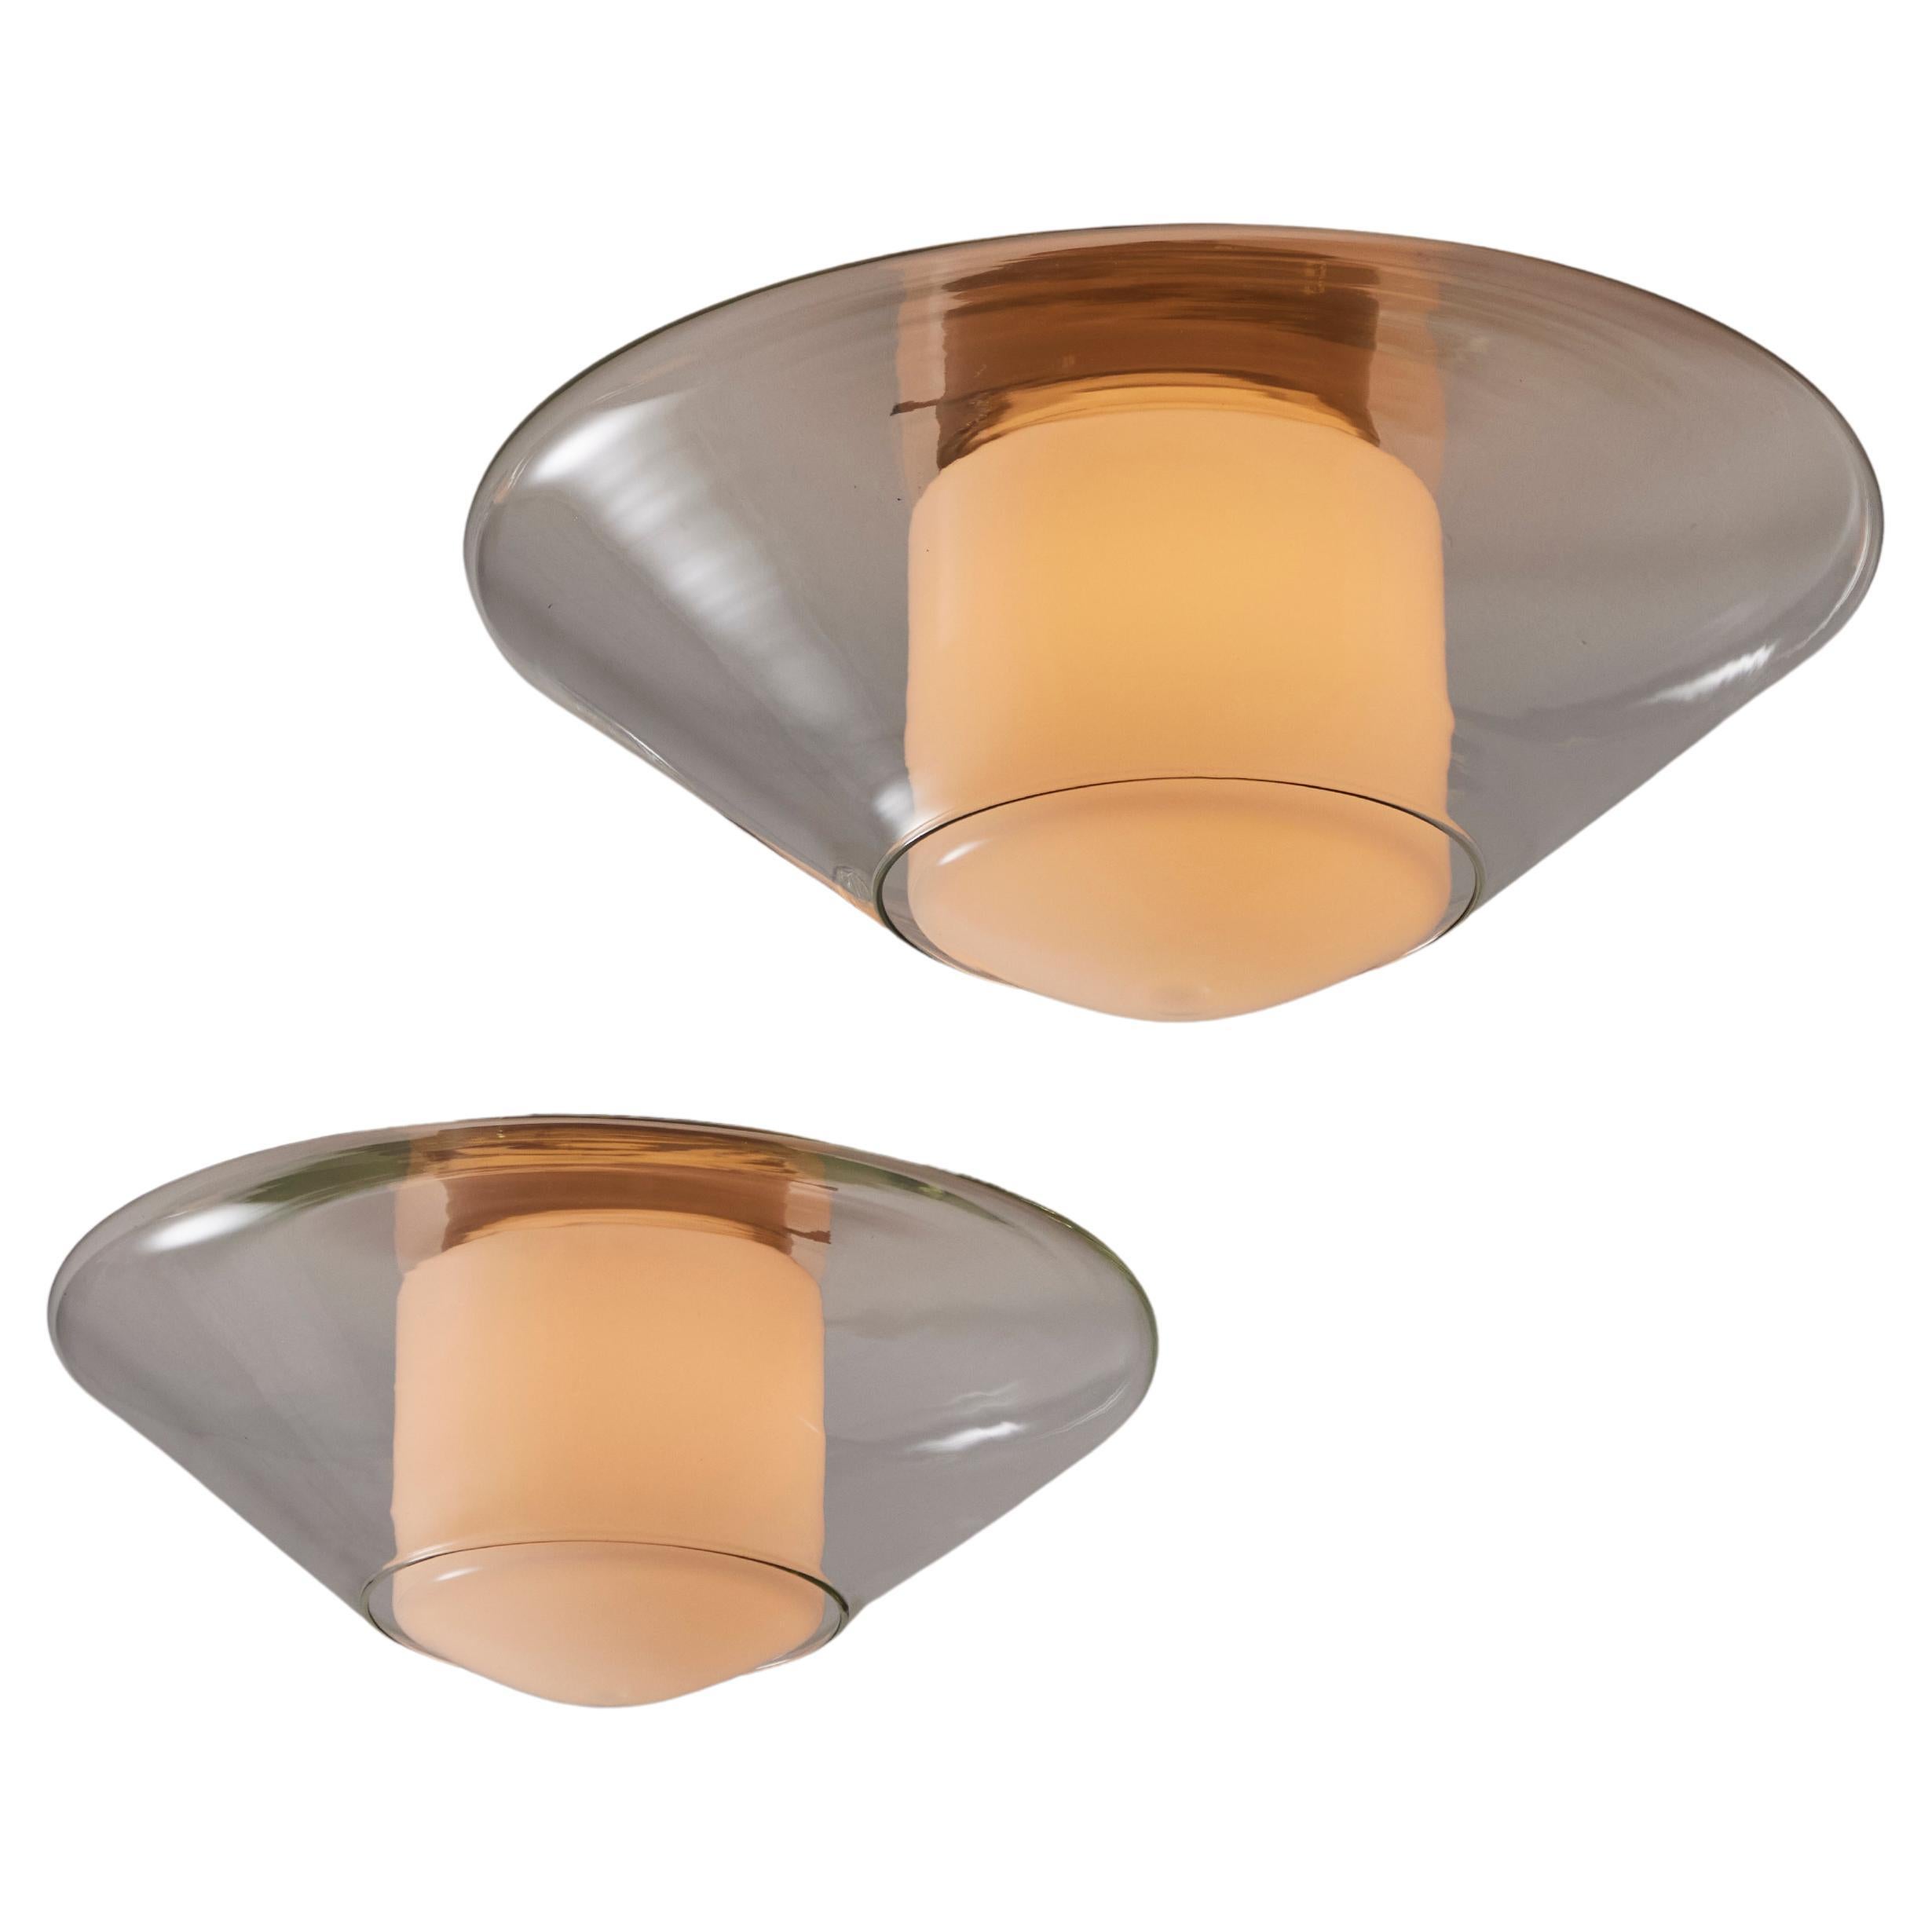 Flush Mount für eine Person von Oluce. Entworfen und hergestellt in Italien in den 1960er Jahren. Die Glasunterputzdose besteht aus einem  Der äußere Kegel besteht aus klarem, geblasenem Glas und der innere zylindrische Diffusor aus Opalglas. Die